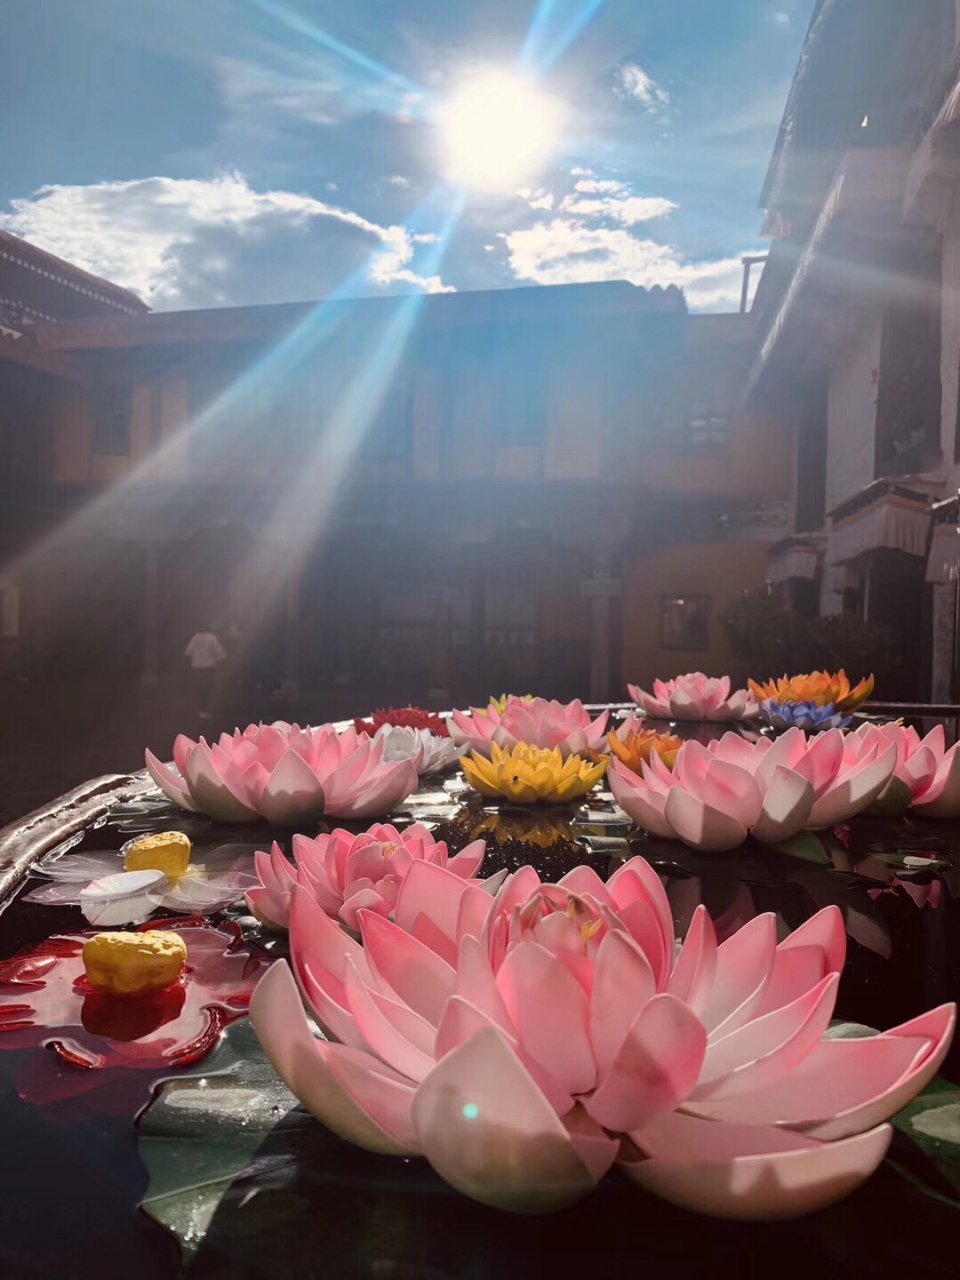 西藏最不缺的就是美景...